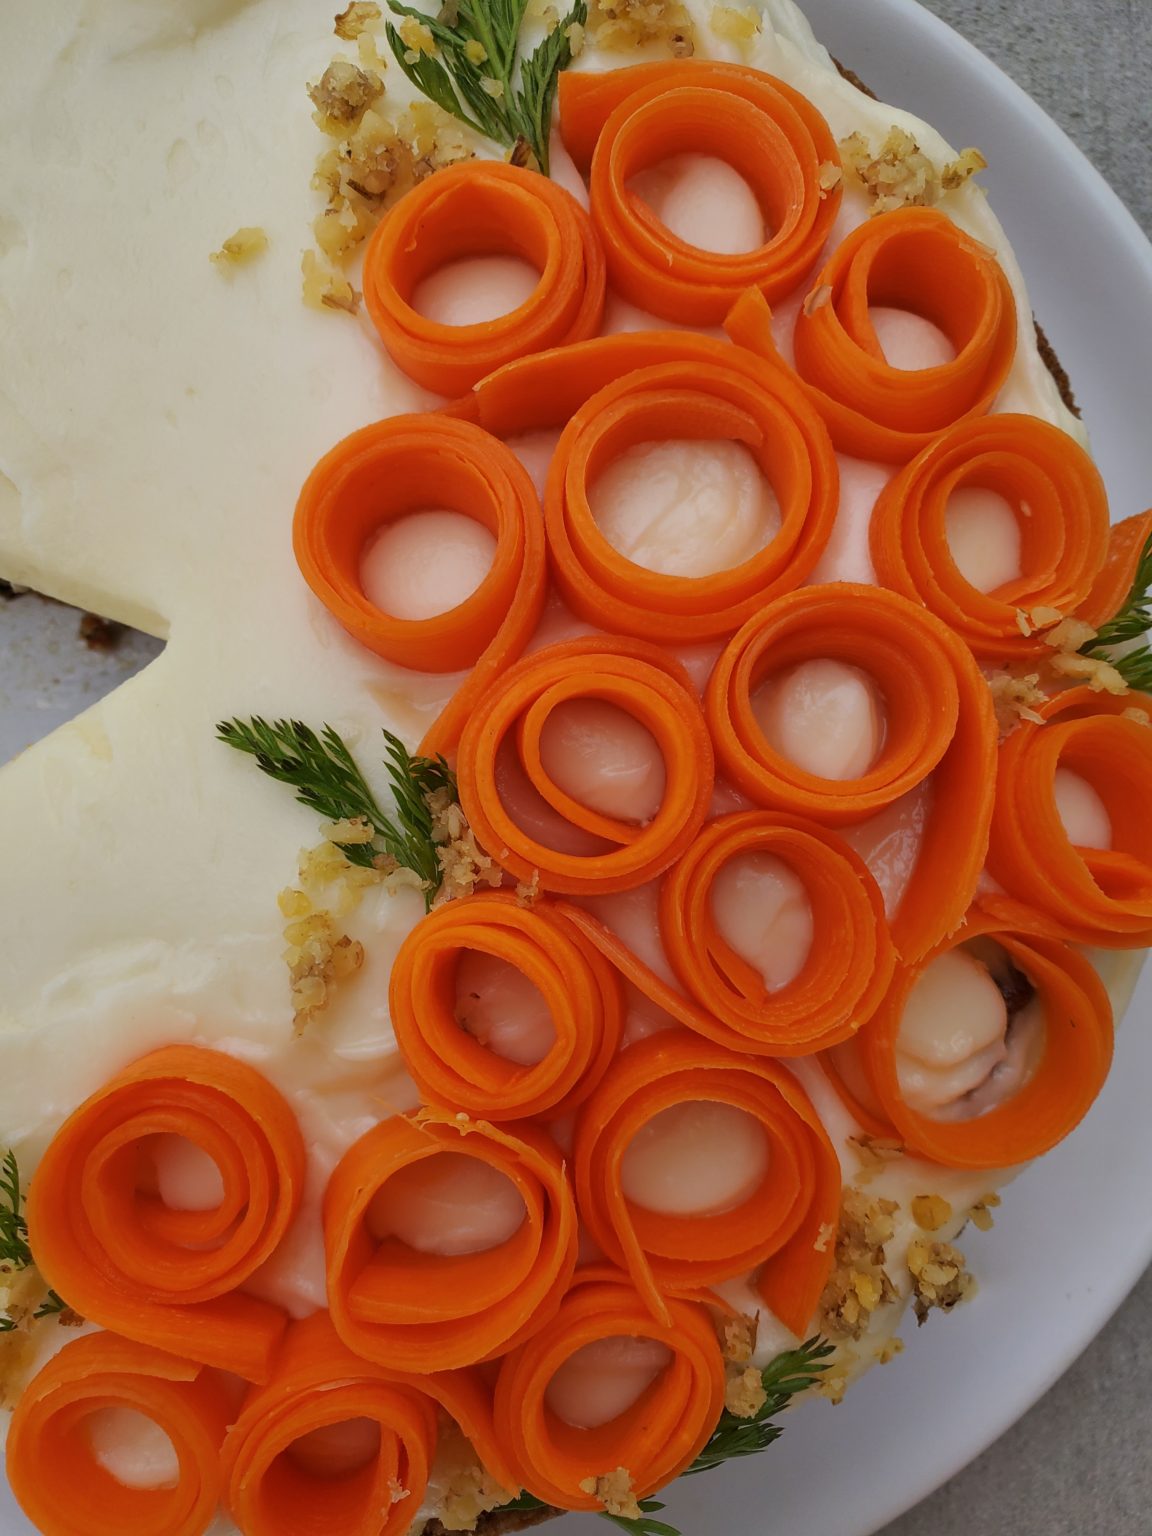 Carrot Cake Close Up 1152x1536 